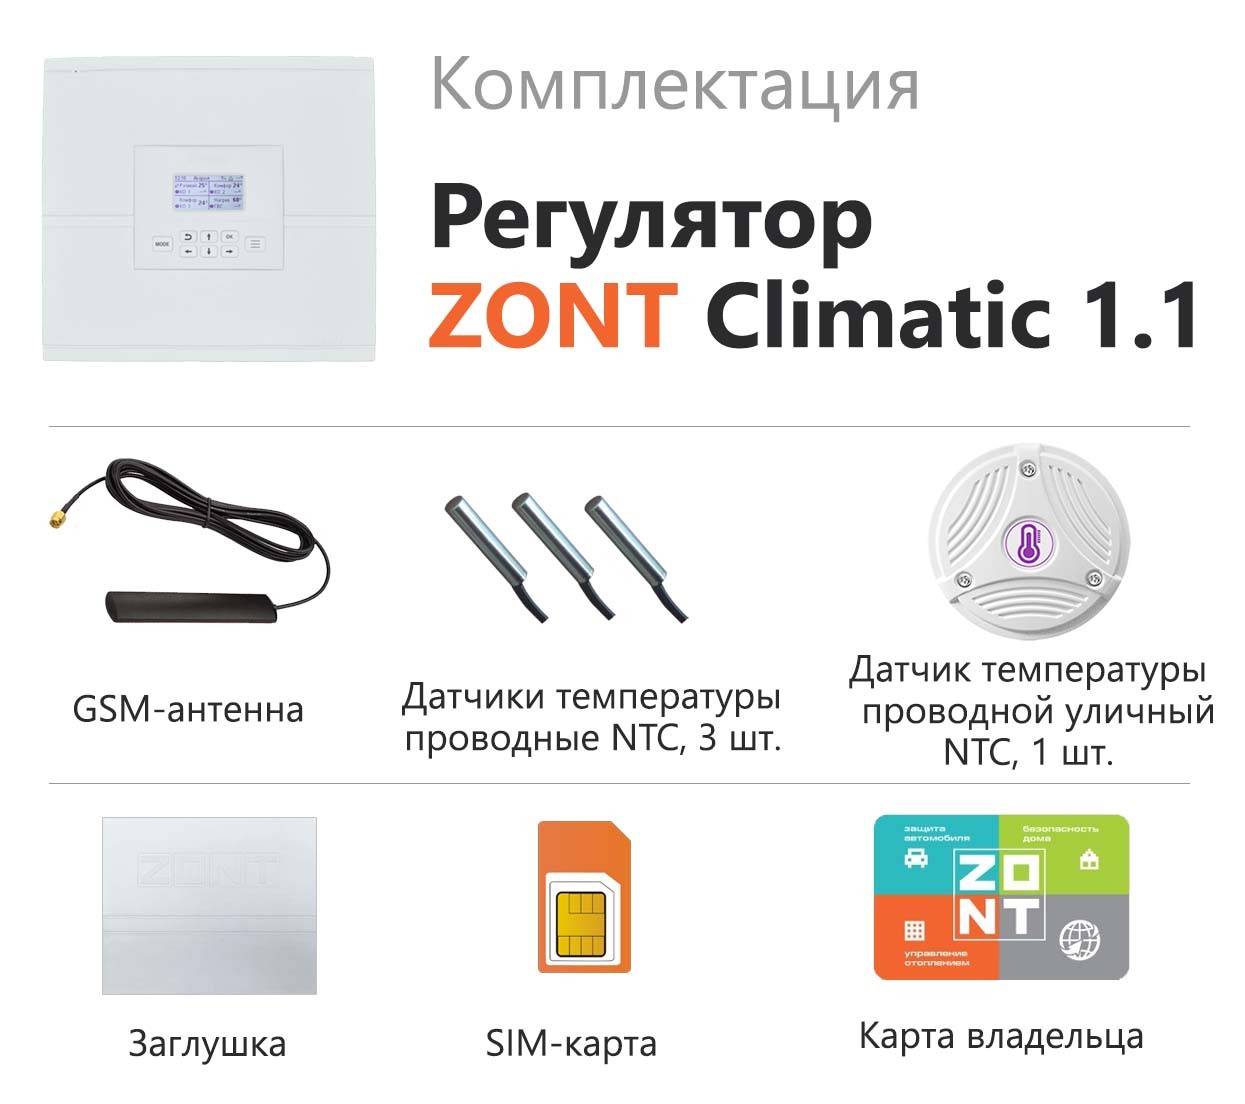 Детальное изображение товара "Автоматический регулятор систем отопления ZONT CLIMATIC 1.1" из каталога оборудования для видеонаблюдения